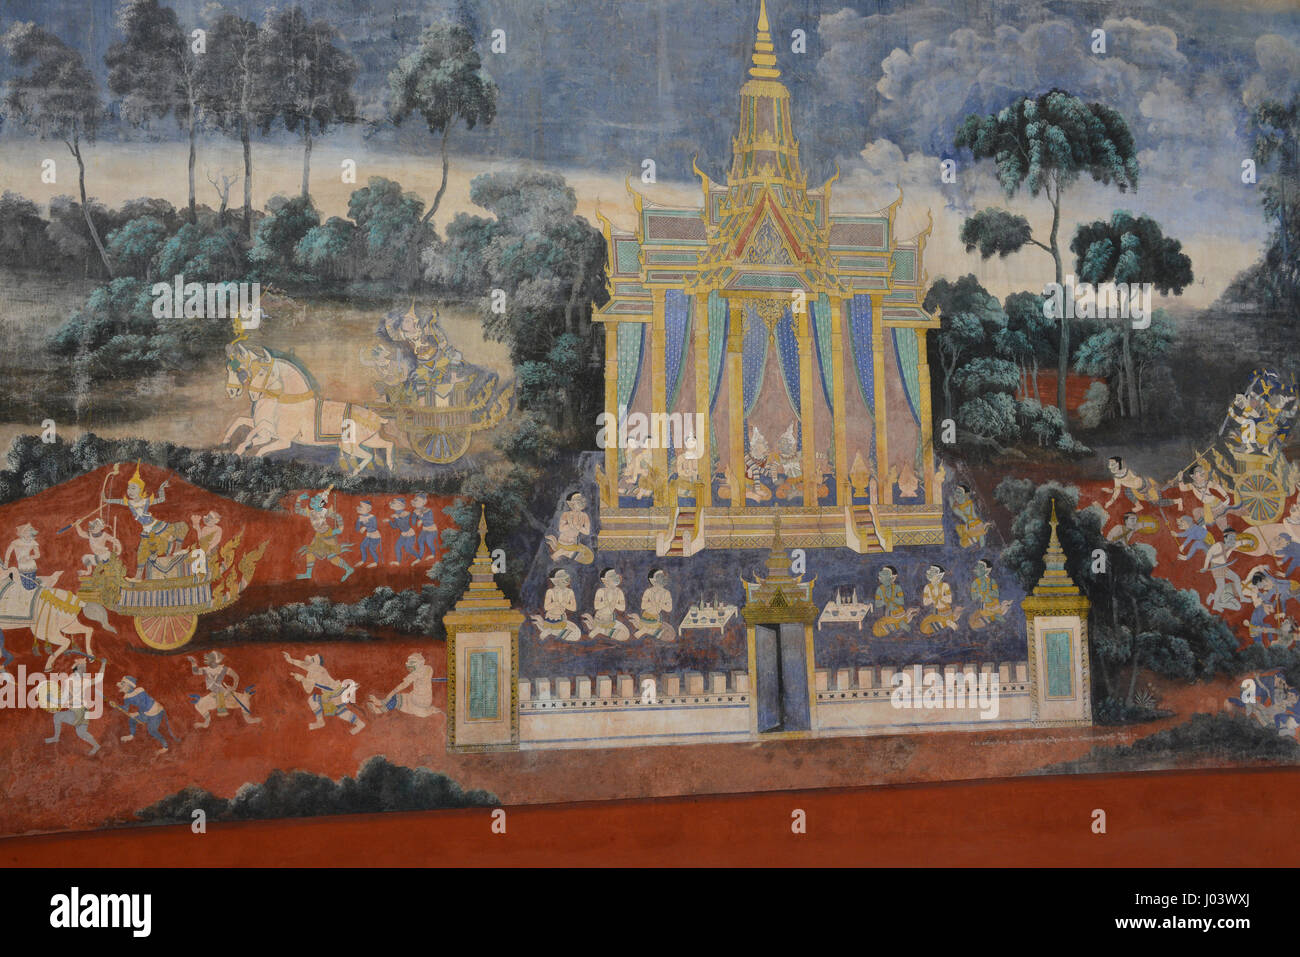 Plus de détails à partir de magnifiques fresques du Reamker dans la galerie du Palais Royal, Phnom Penh. Ce sont une version khmère du Ramayana. Banque D'Images